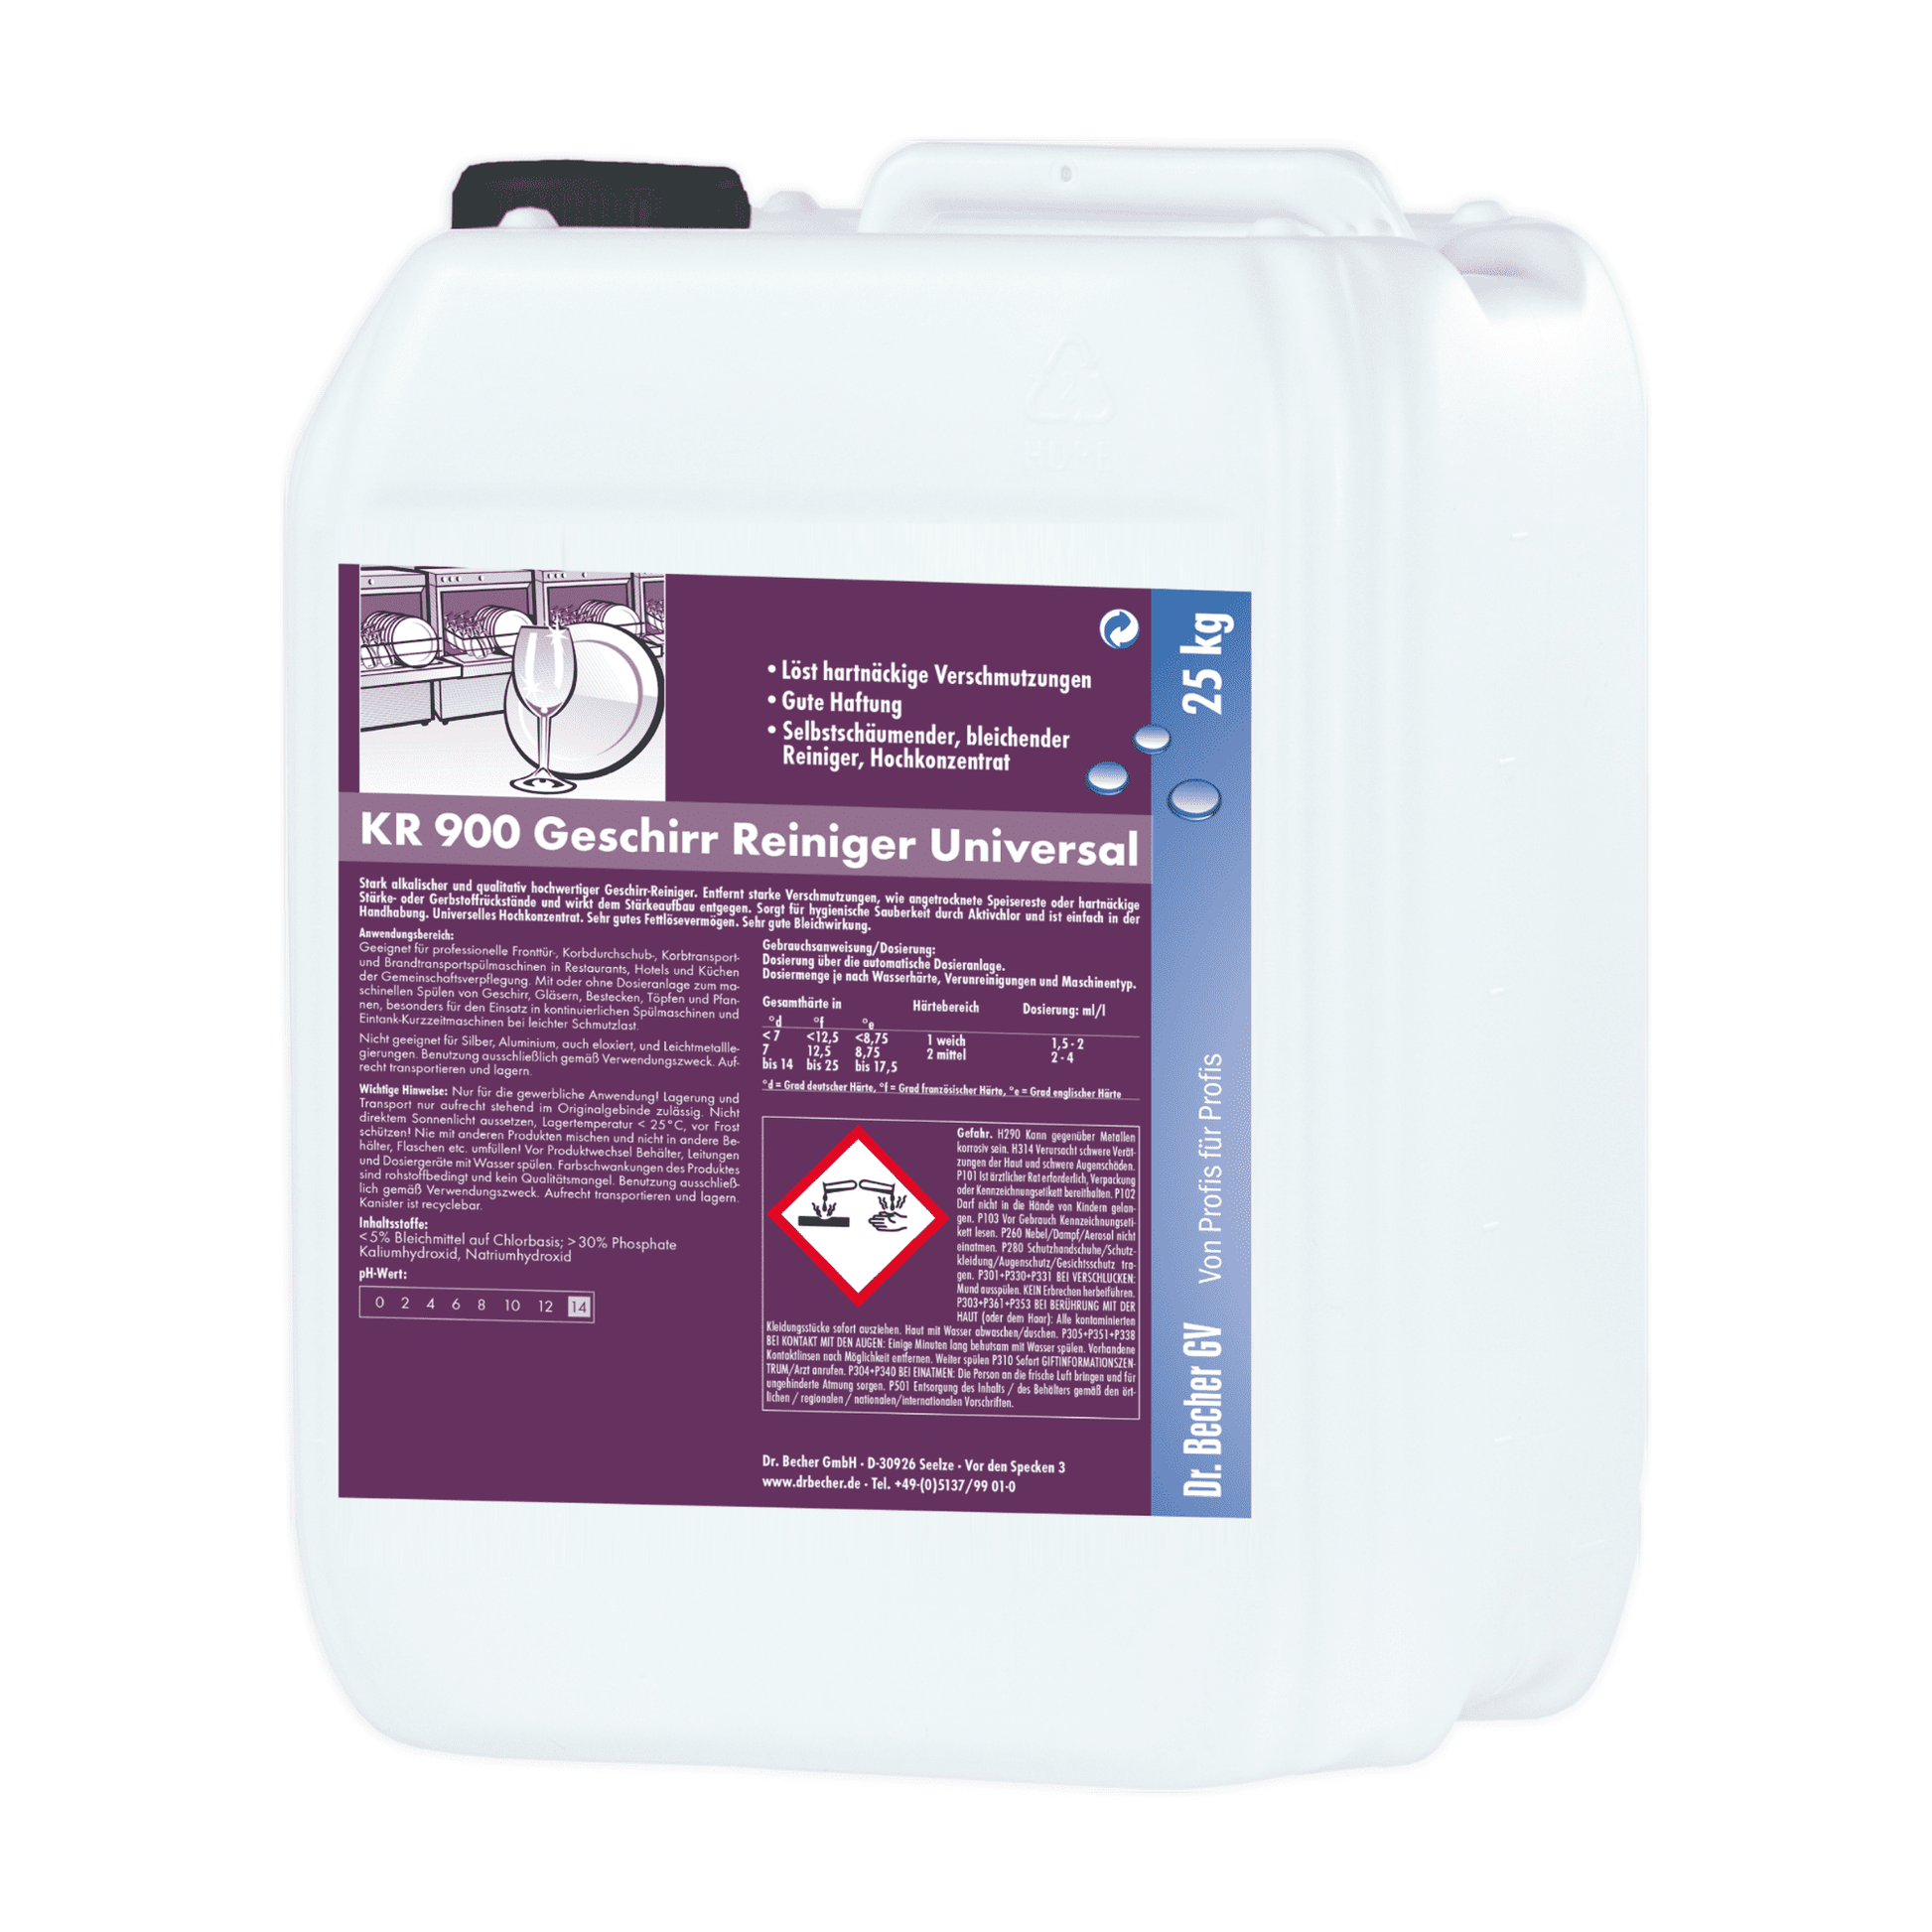 Ein großer weißer Plastikkanister mit einem violett-weißen Etikett mit Anweisungen und einem Gefahrensymbol, gekennzeichnet für das Reinigungsprodukt Dr. Becher KR 900 Geschirr Reiniger Universal.